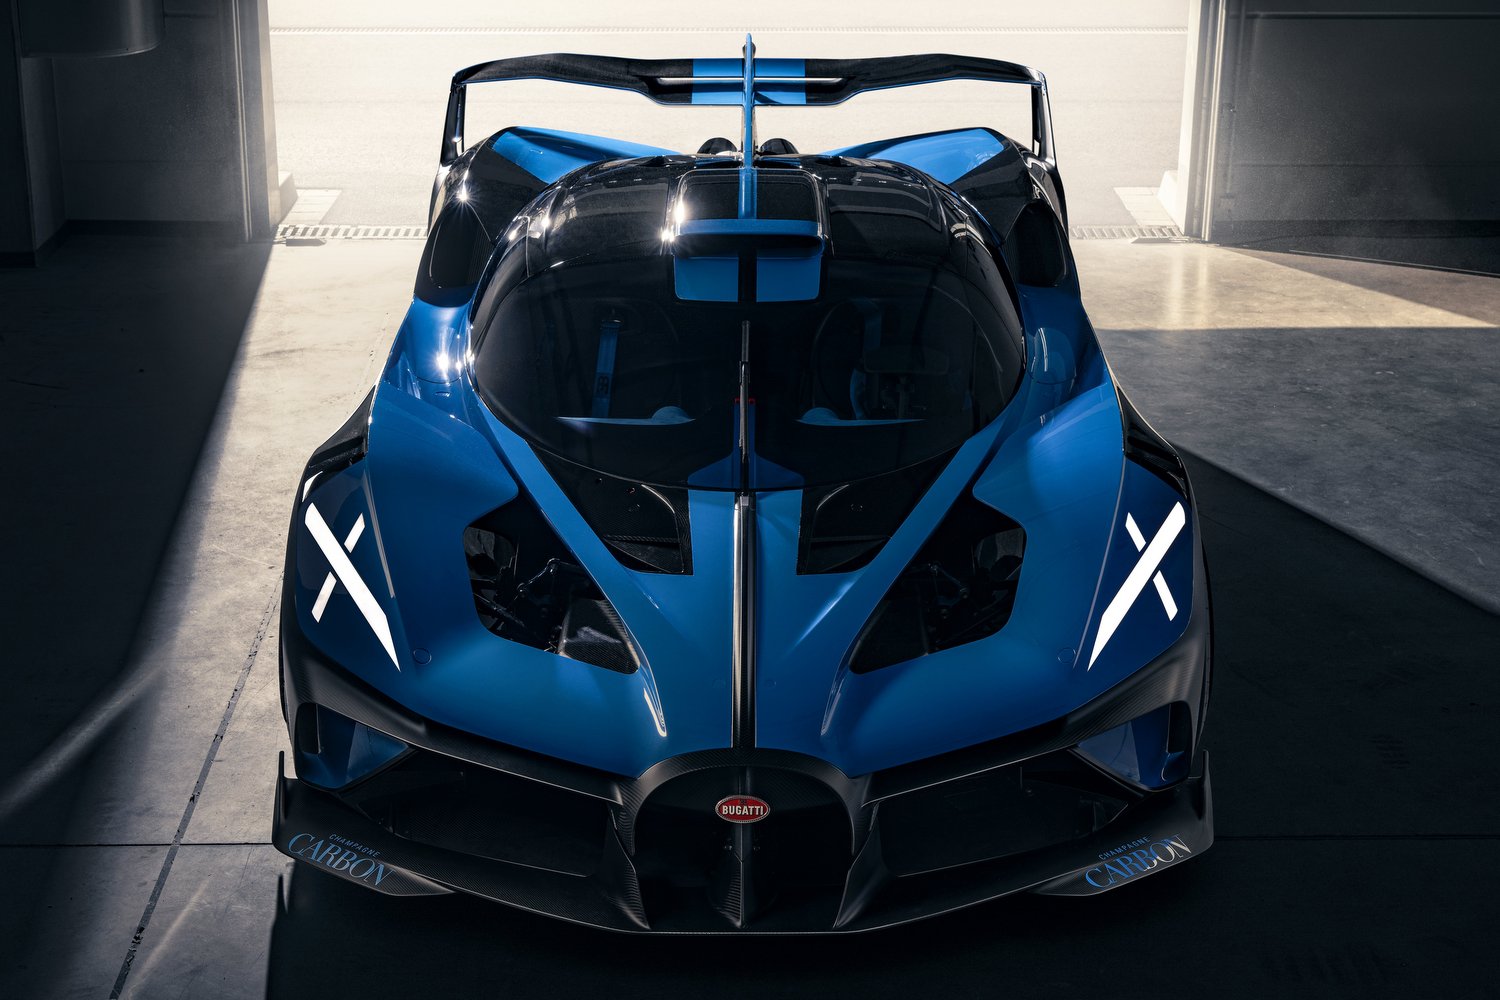 Libabőrös burkolat teszi áramvonalasabbá a Bugatti versenyautóját 22